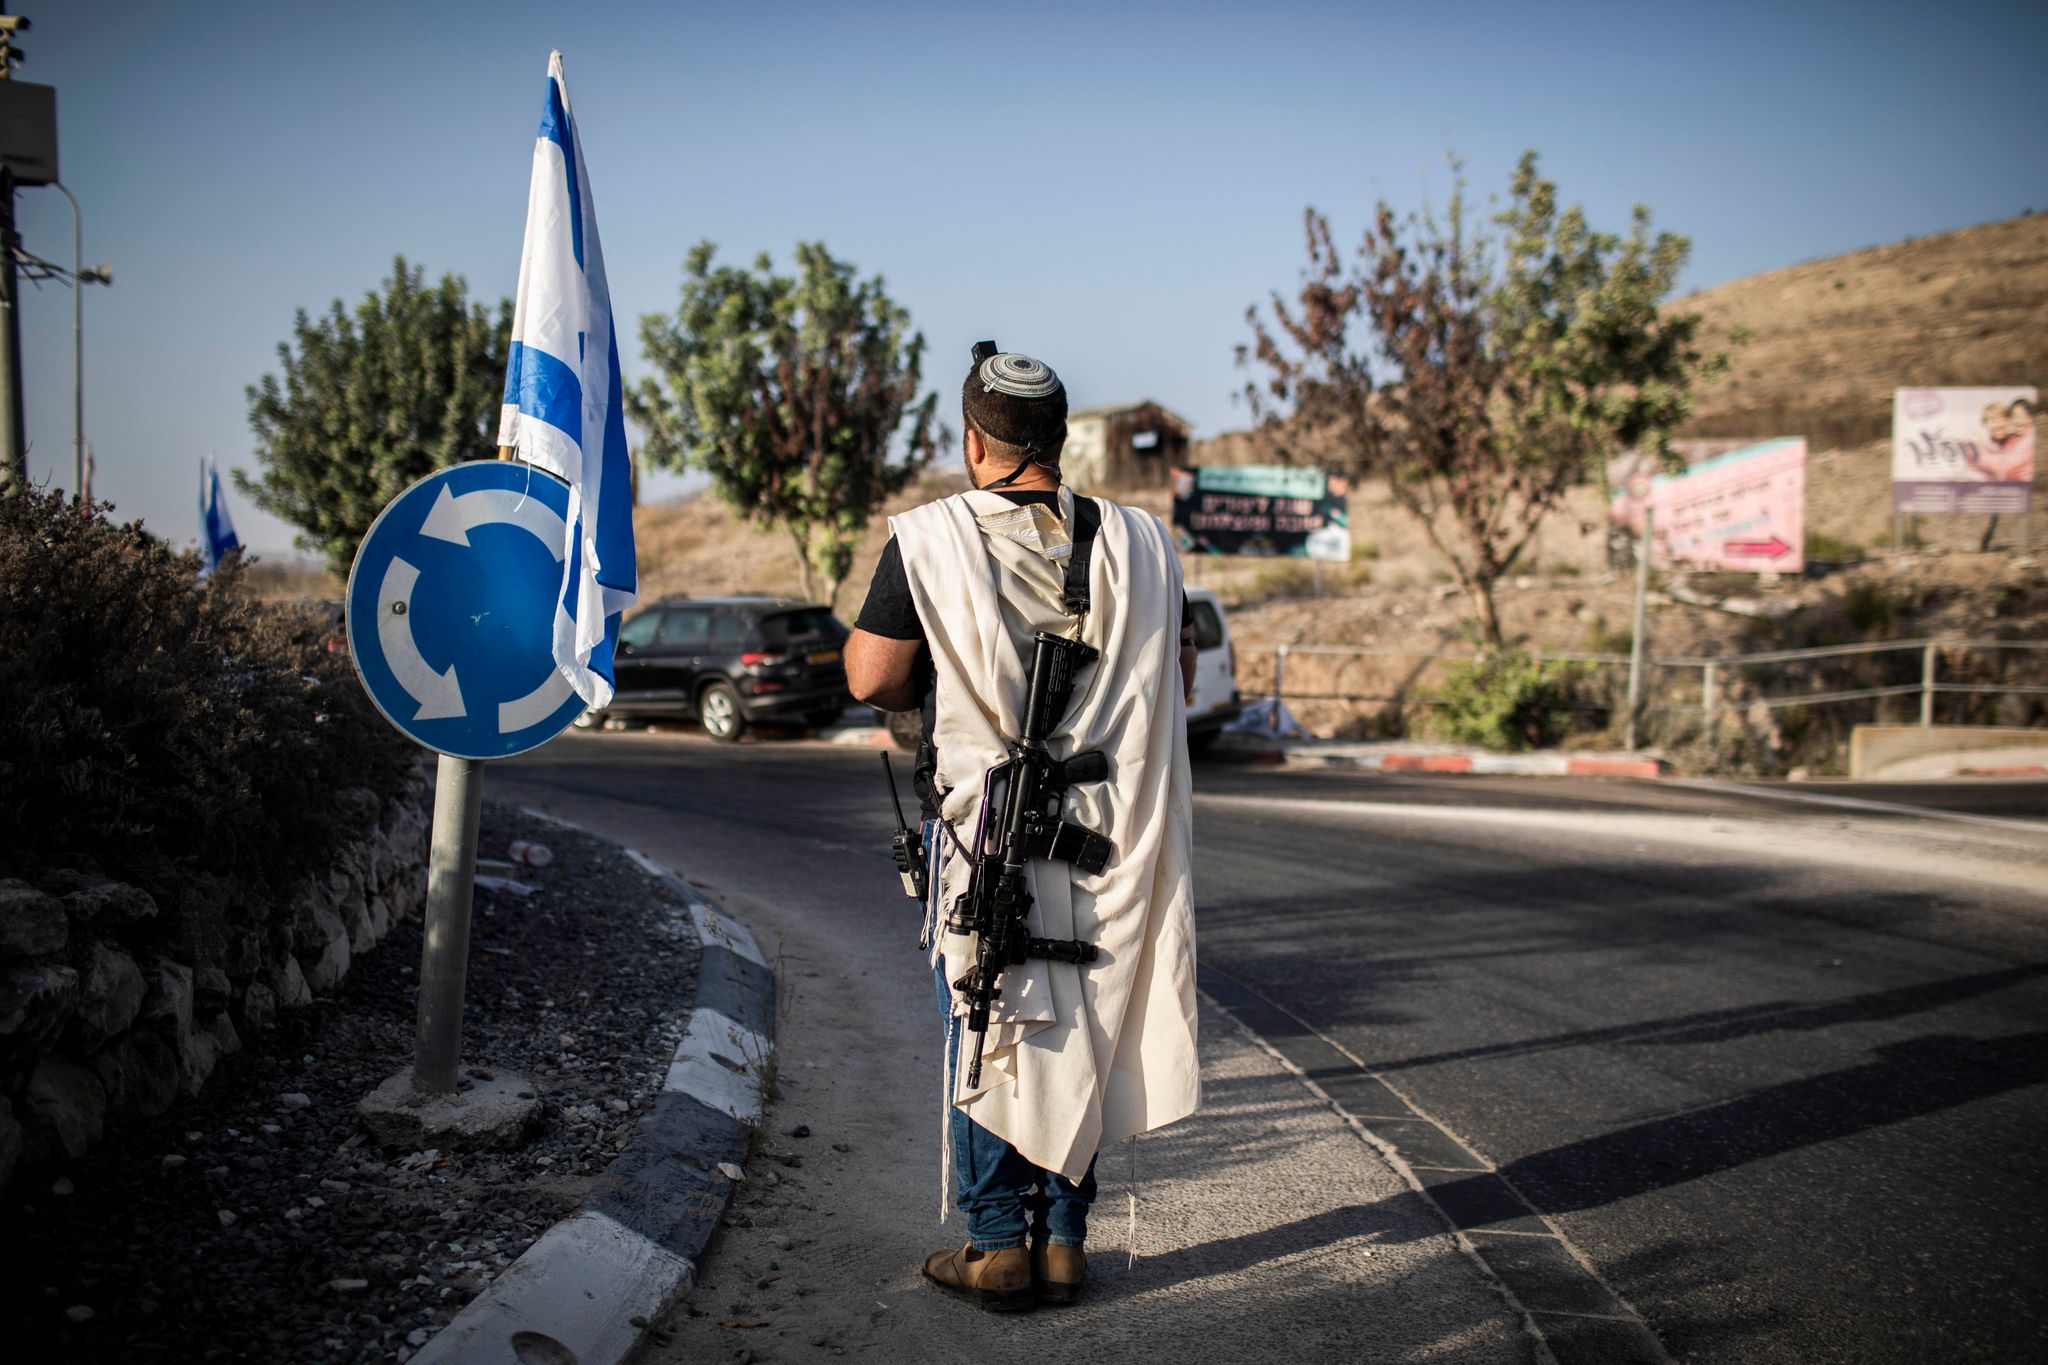 Ein rechtsgerichteter israelischer Siedler trägt eine Waffe nahe der palästinensischen Stadt Nablus im Westjordanland (Archivfoto). Die EU verhängt erstmals Sanktionen wegen der Gewalt radikaler israelischer Siedler.